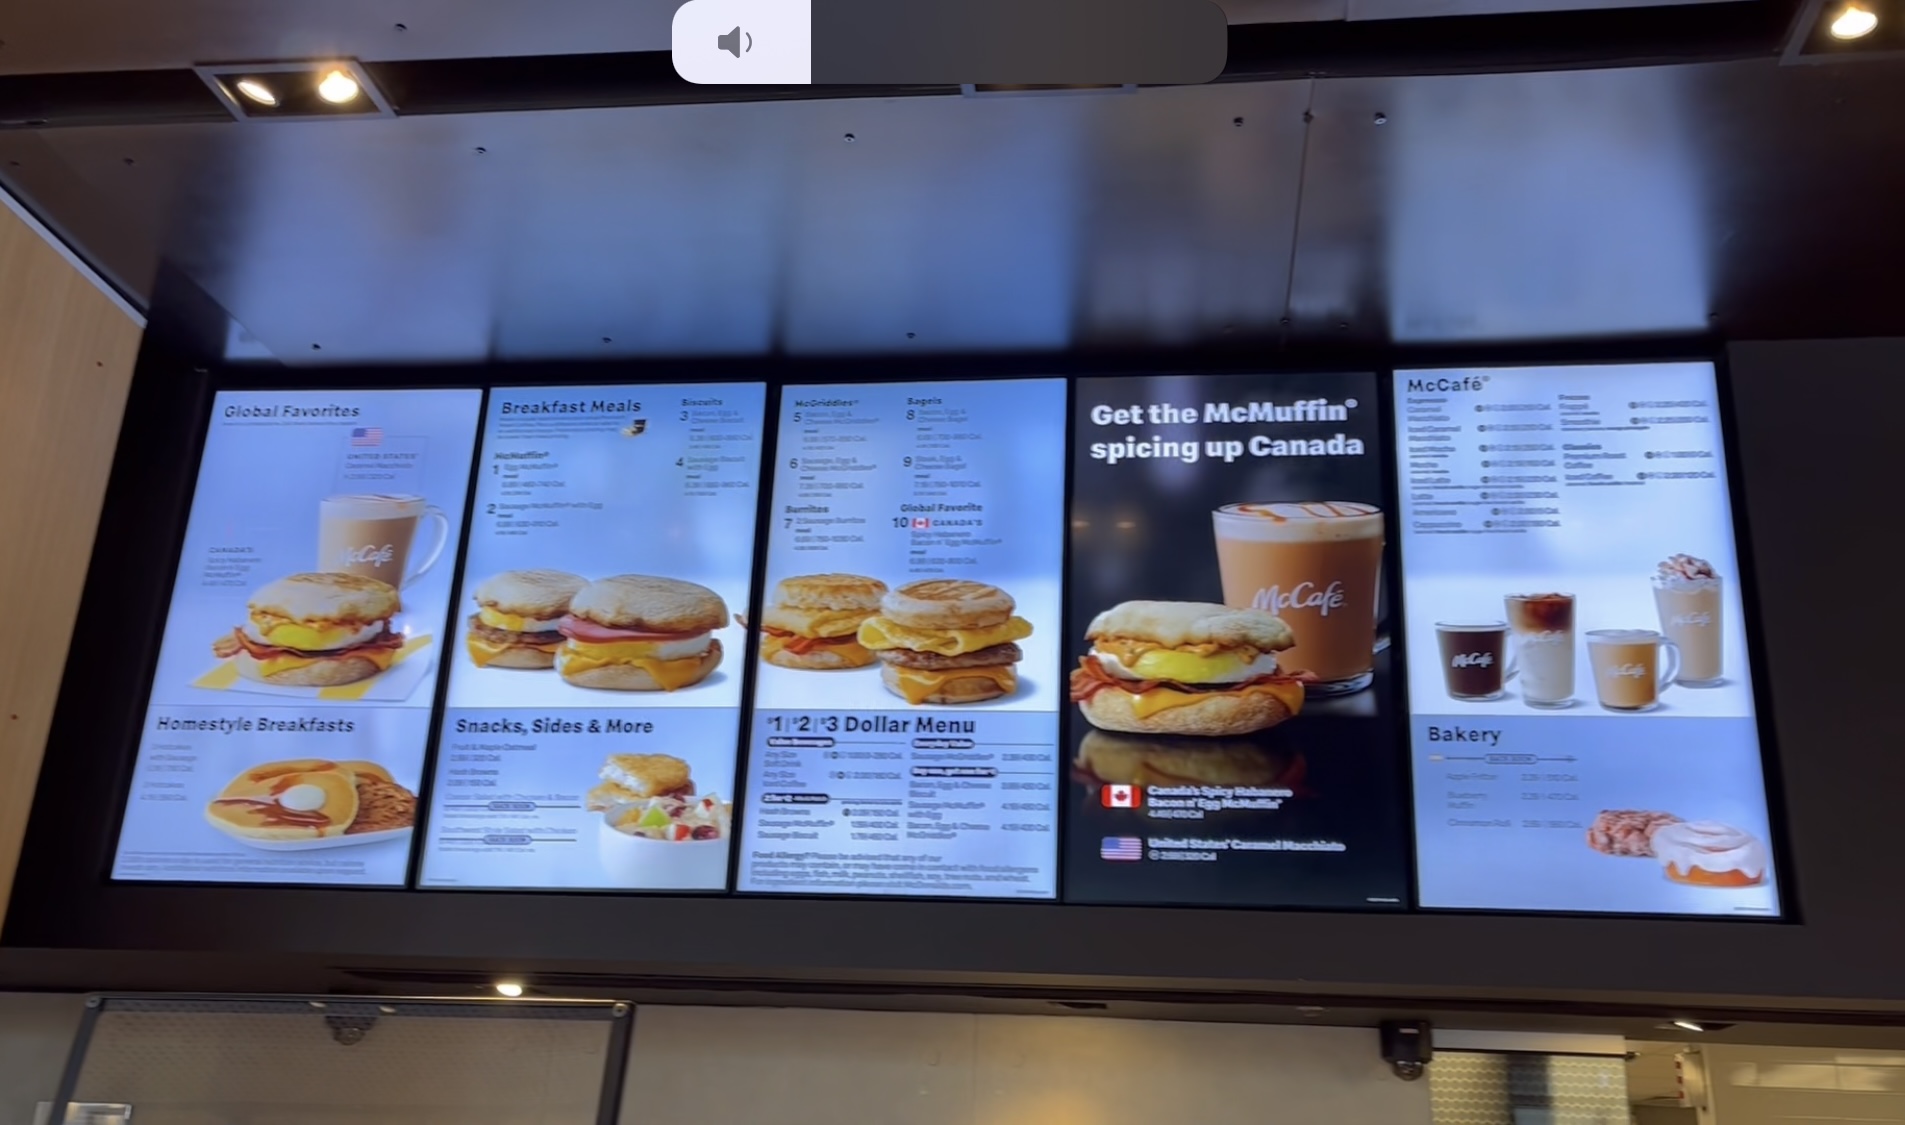 맥도날드 글로벌 메뉴 레스토랑 메뉴판입니다.